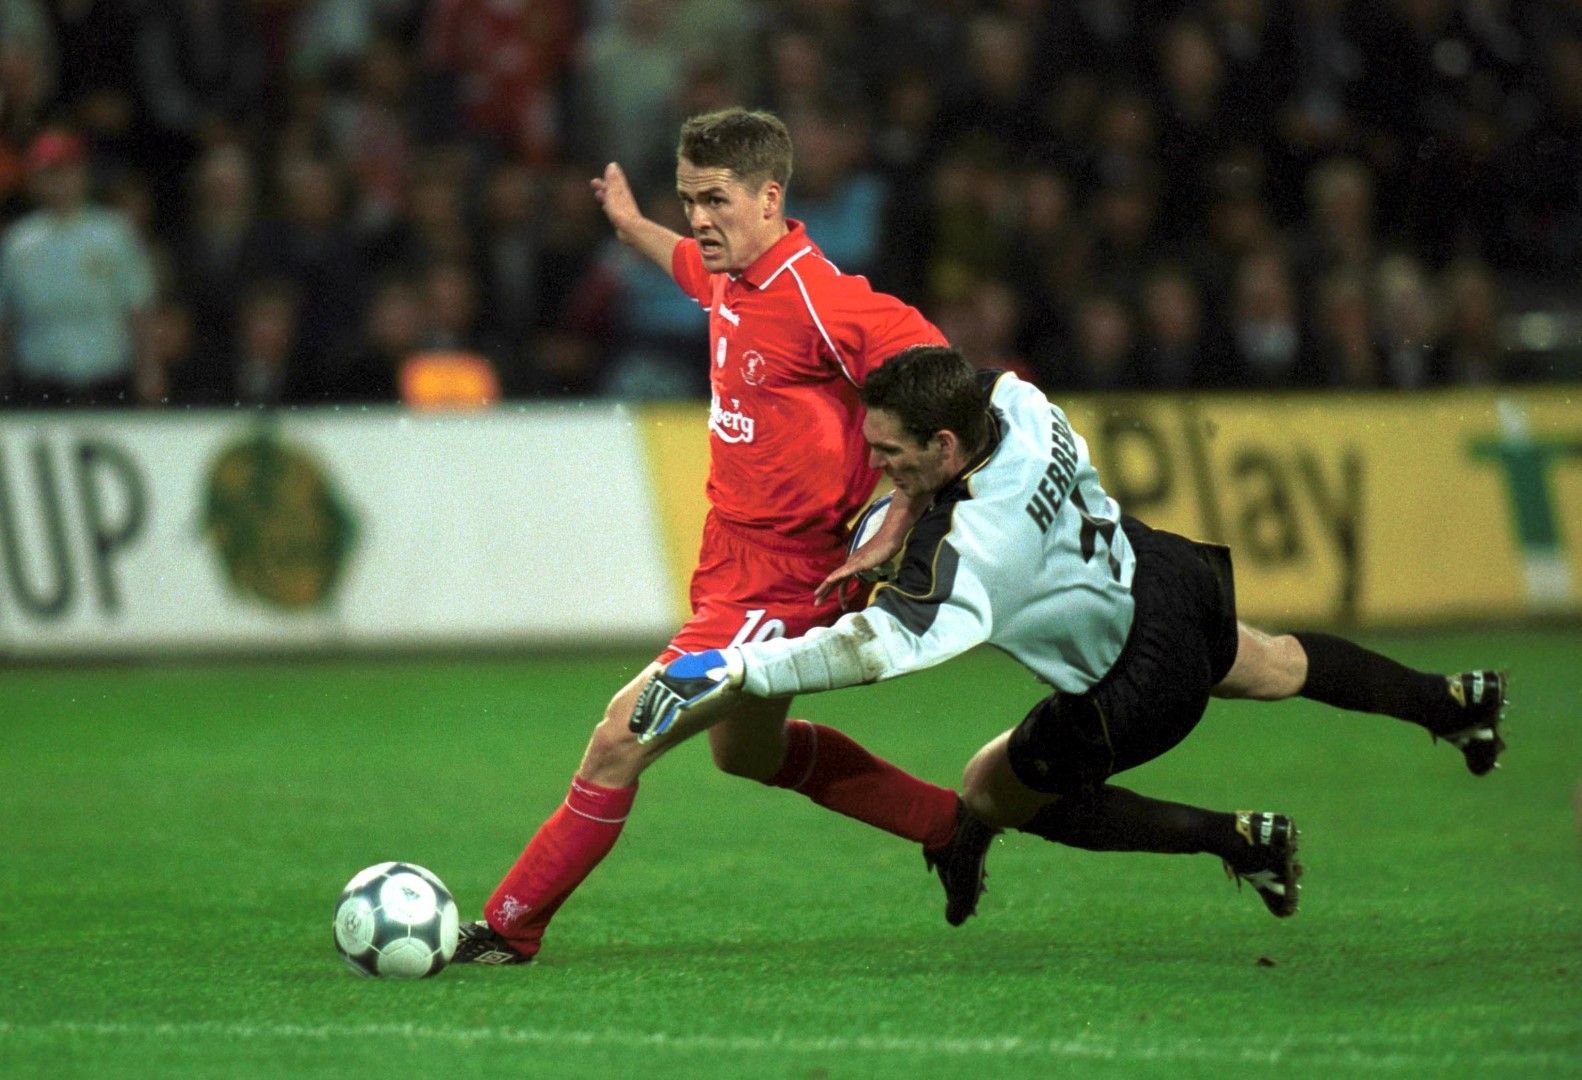 2001 г., Дортмунд. Майкъл Оуен атакува вратата на Алавес в култовия финал, спечелен от Ливърпул с 5:4